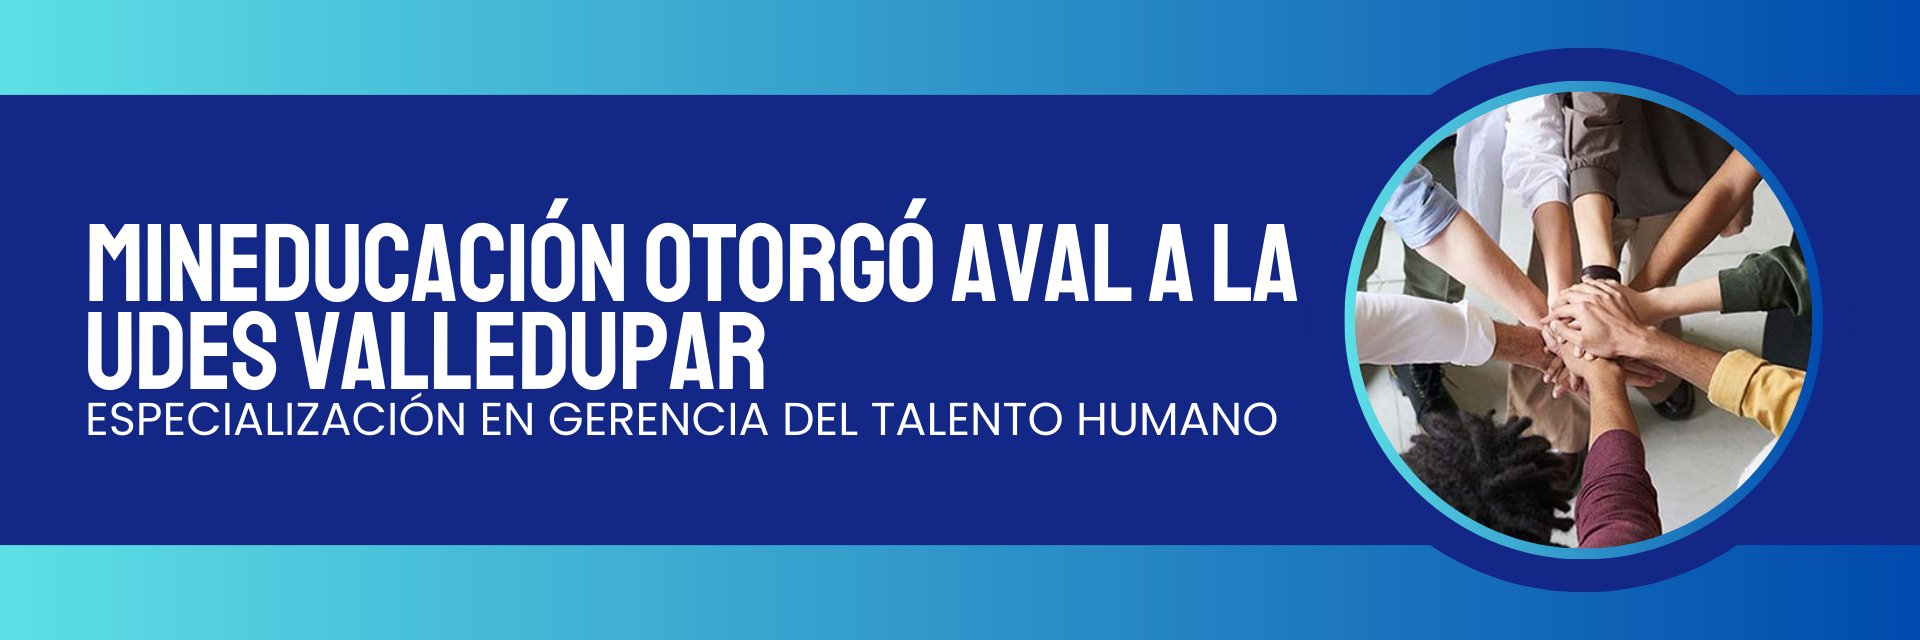 MinEducación otorgó aval a la UDES Valledupar para especialización en Gerencia del Talento Humano